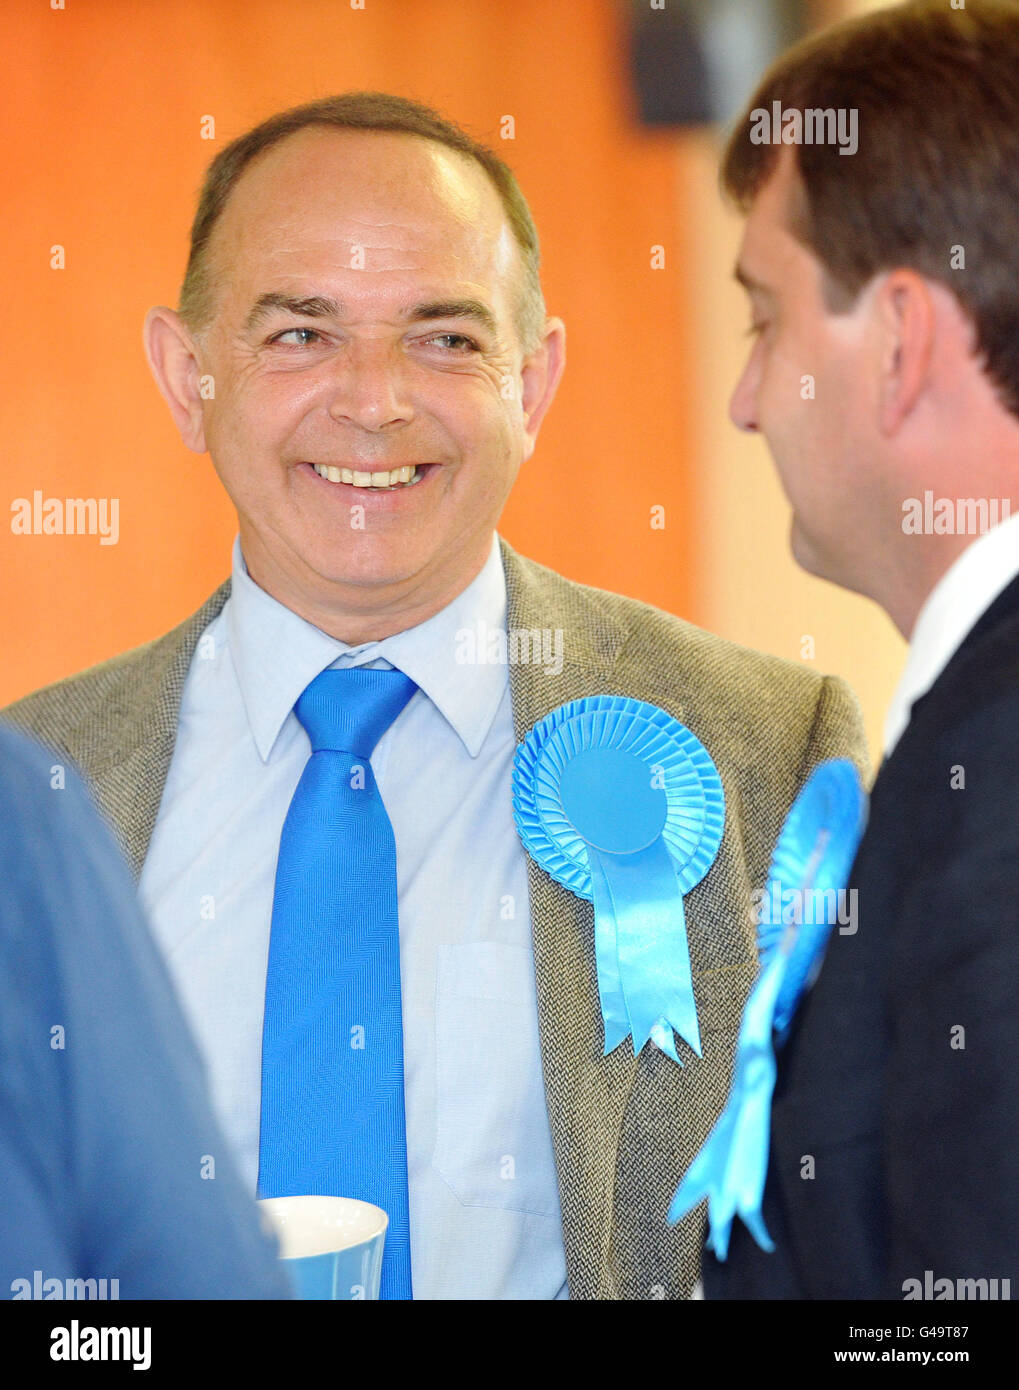 Il leader del partito conservatore gallese Nick Bourne (a sinistra) durante una visita al Club conservatore di Usk, nel Galles del Sud-Est, mentre gli elettori vanno oggi alle elezioni dell'Assemblea gallese e al referendum AV. Foto Stock